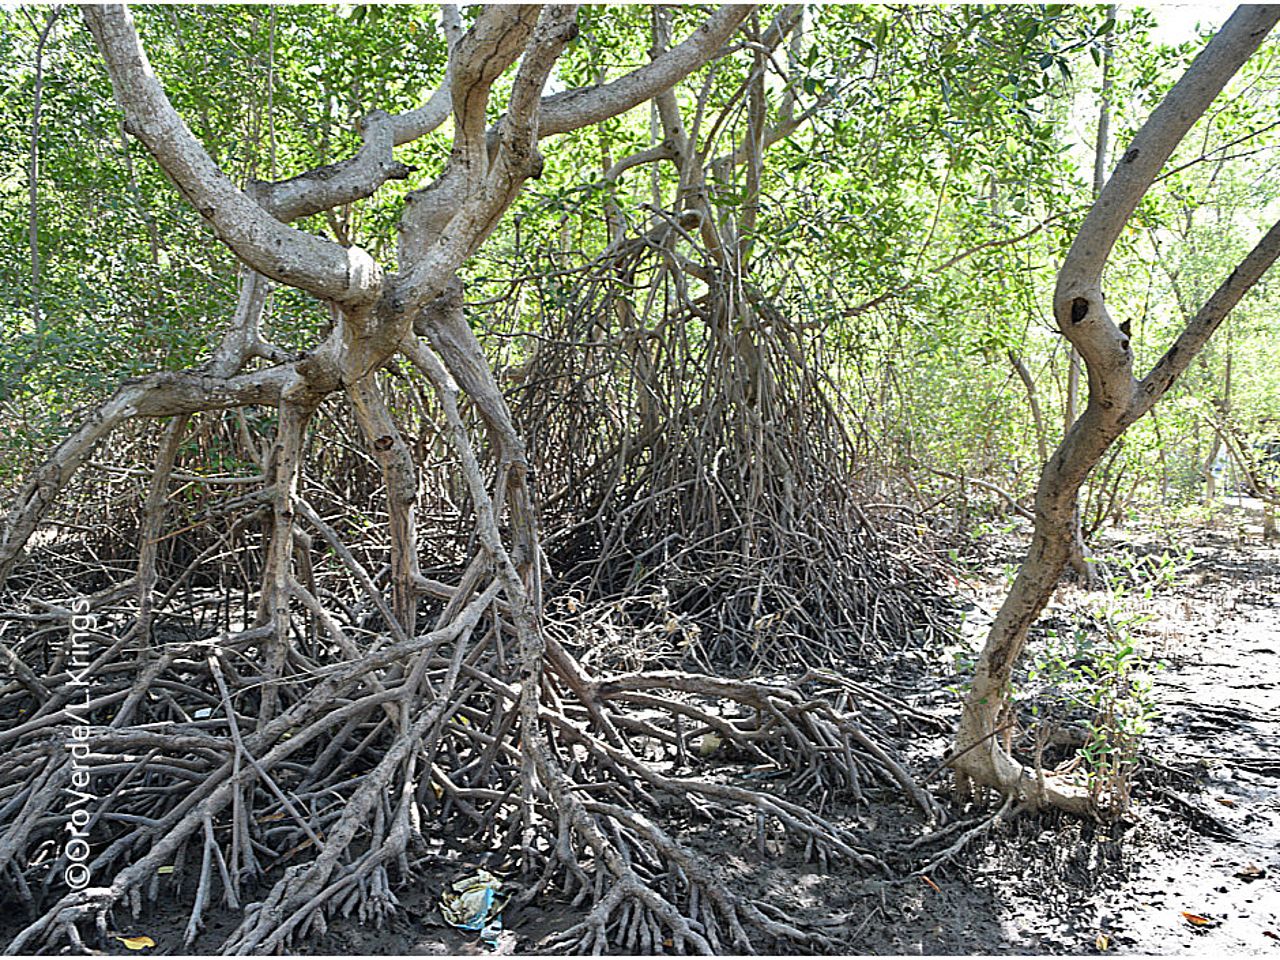 Mangrovenbäume bei Ebbe. Solange das Wasser weg ist, kann man das beeindruckende Wurzelgeflecht der Mangroven sehen. ©OroVerde/Laura Krings